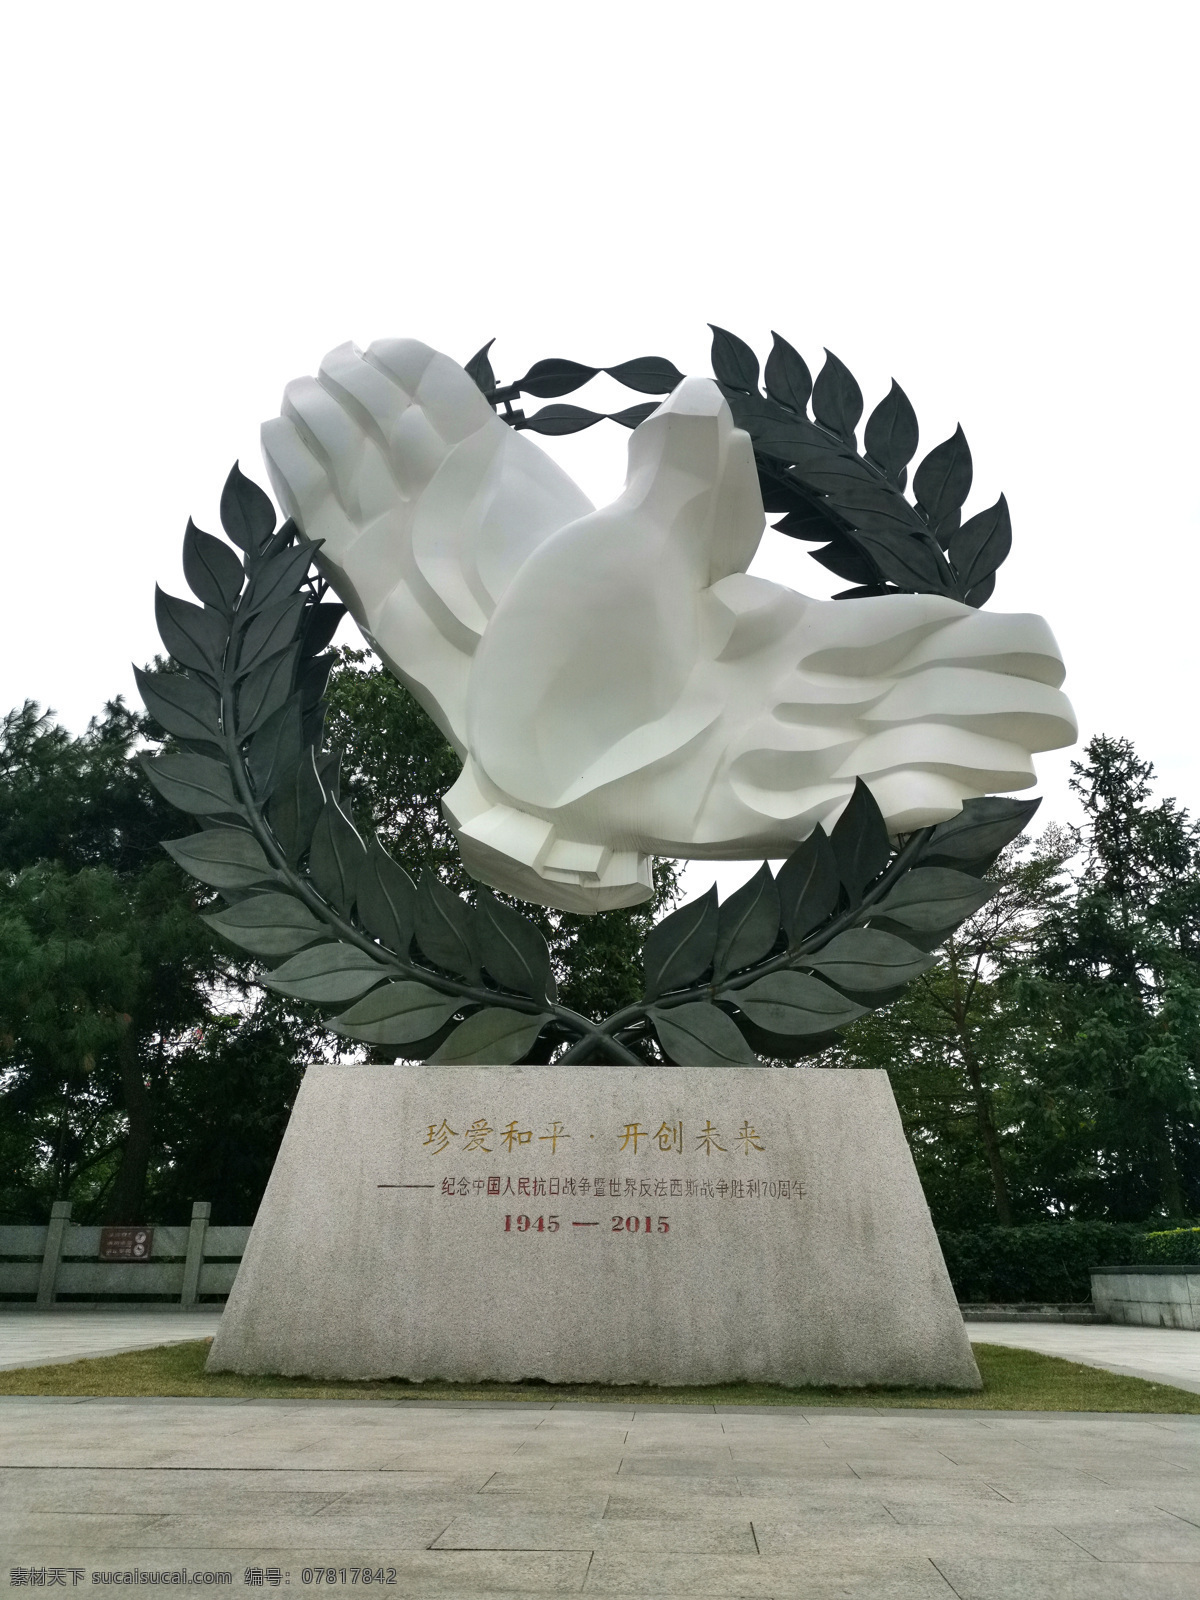 南宁 昆仑 关 抗战 雕塑 抗日 战争 和平 鸽子 造型 国家 橄榄枝 石雕 文化艺术